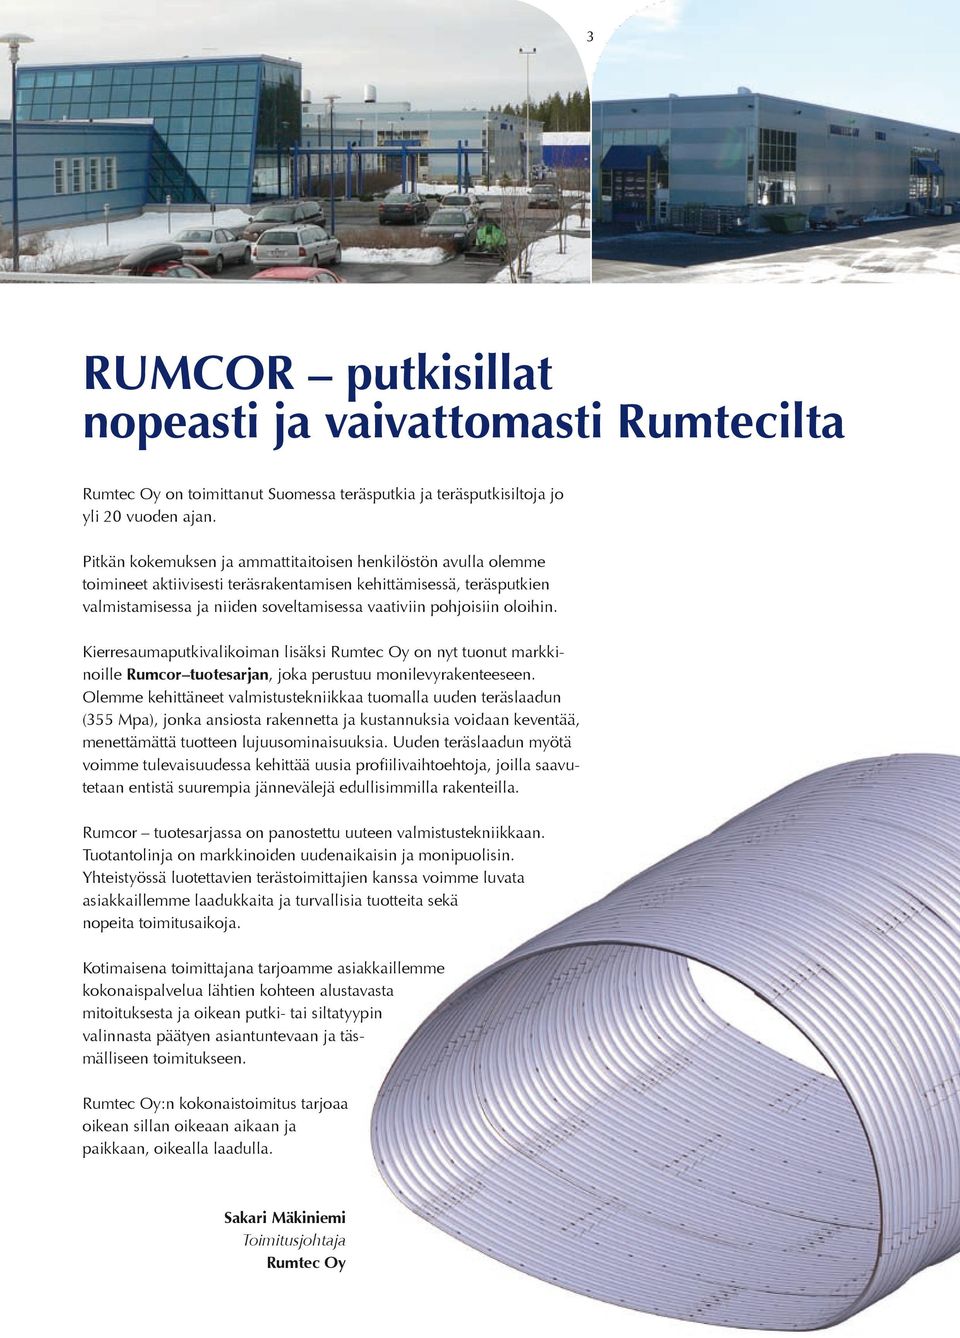 Kierresauaputkivalikoian lisäksi Rutec Oy on nyt tuonut arkkinoille Rucor tuotesarjan, joka perustuu onilevyrakenteeseen.